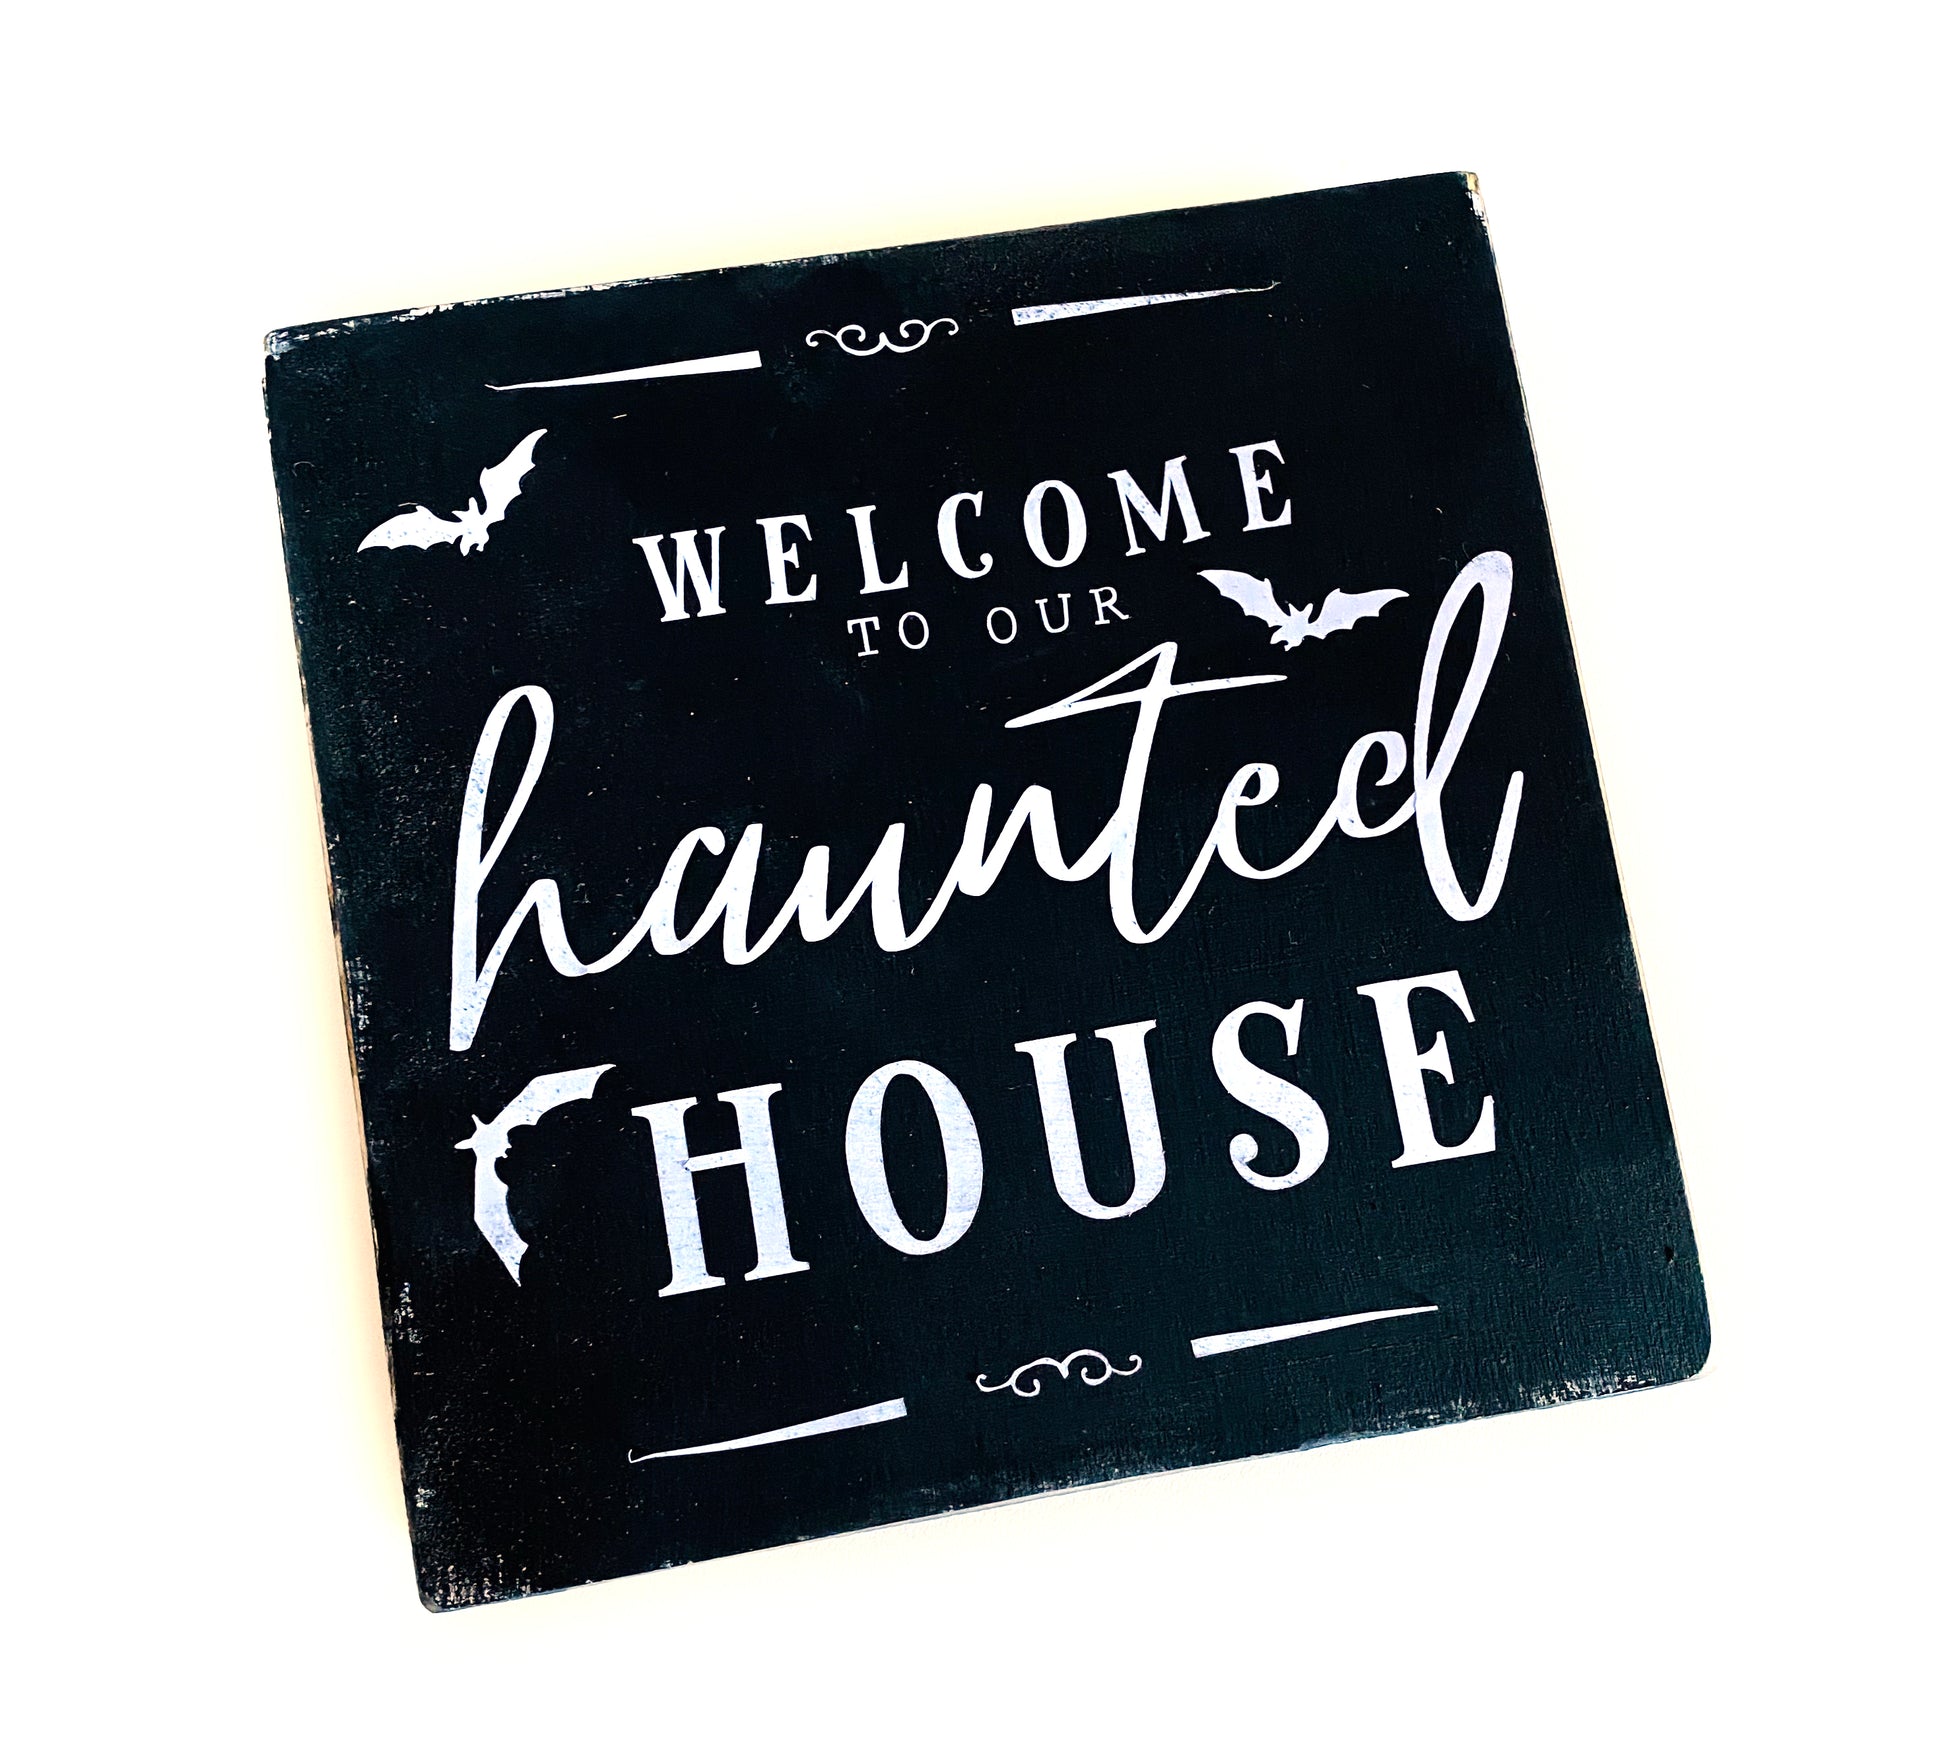 Holzschild Dekoschild Haunted House schwarz Halloween gothic spooky